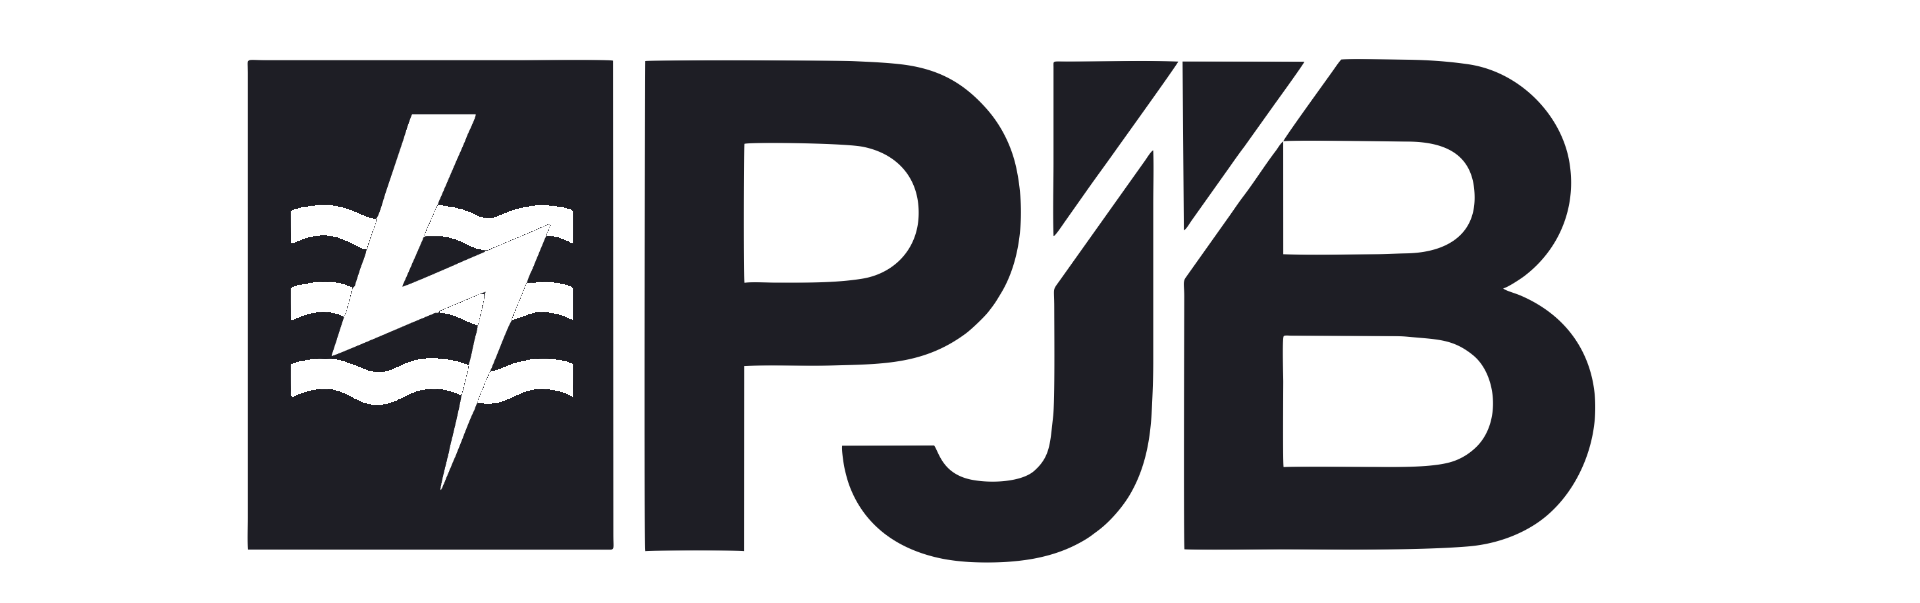 logo pjb